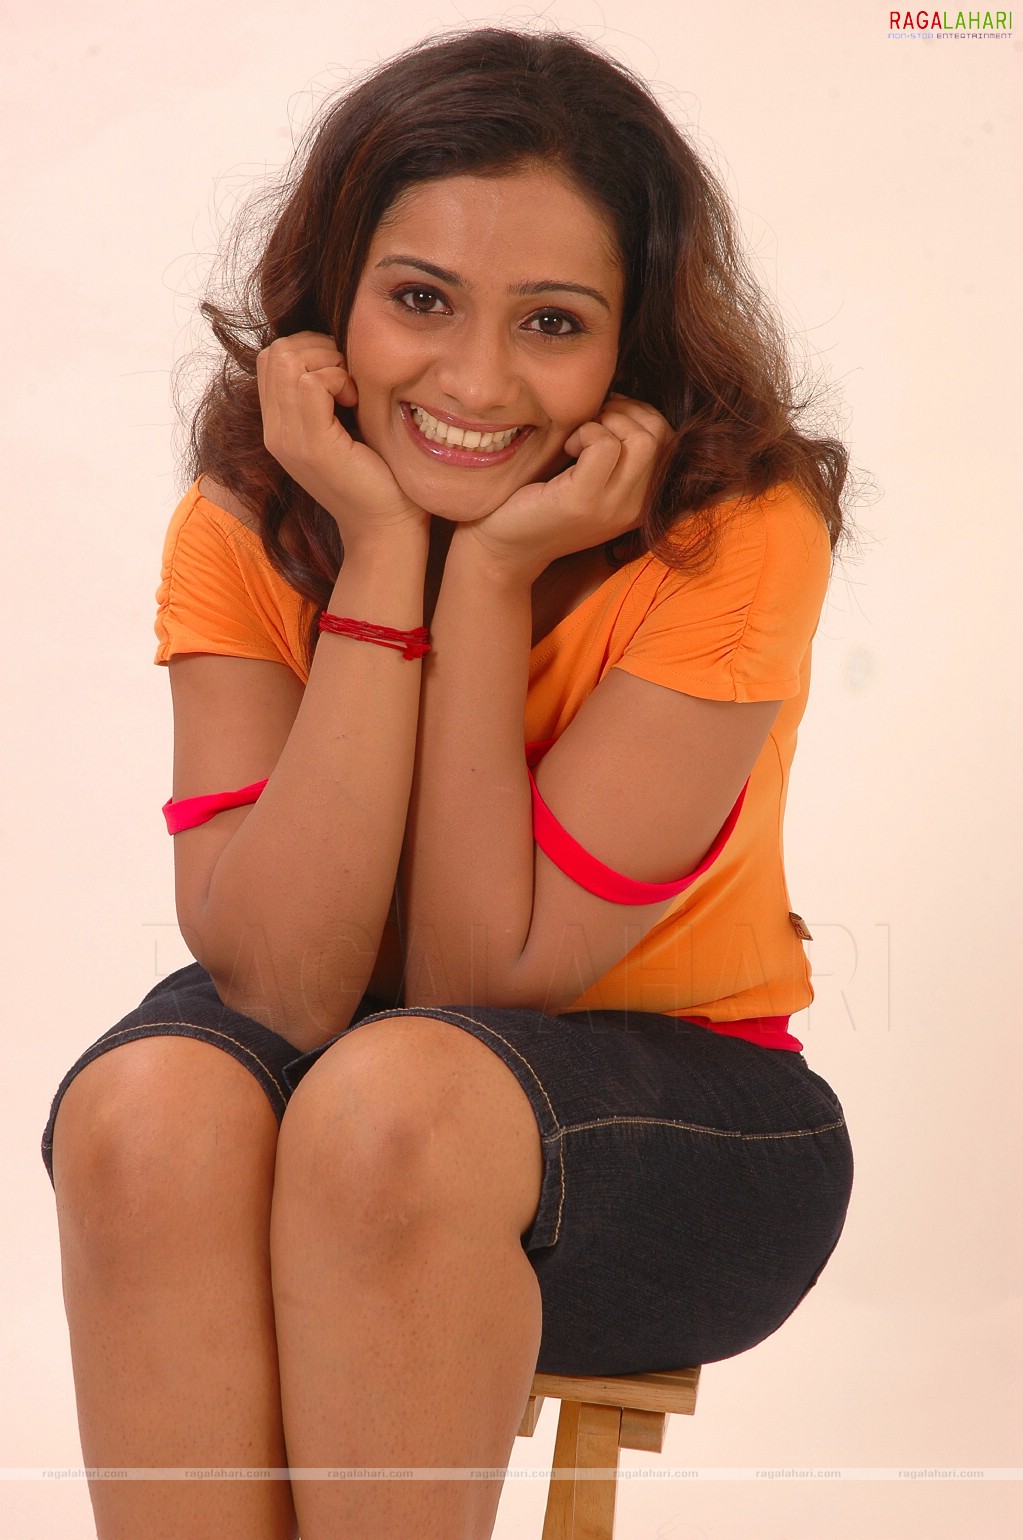 Meera Vasudevan